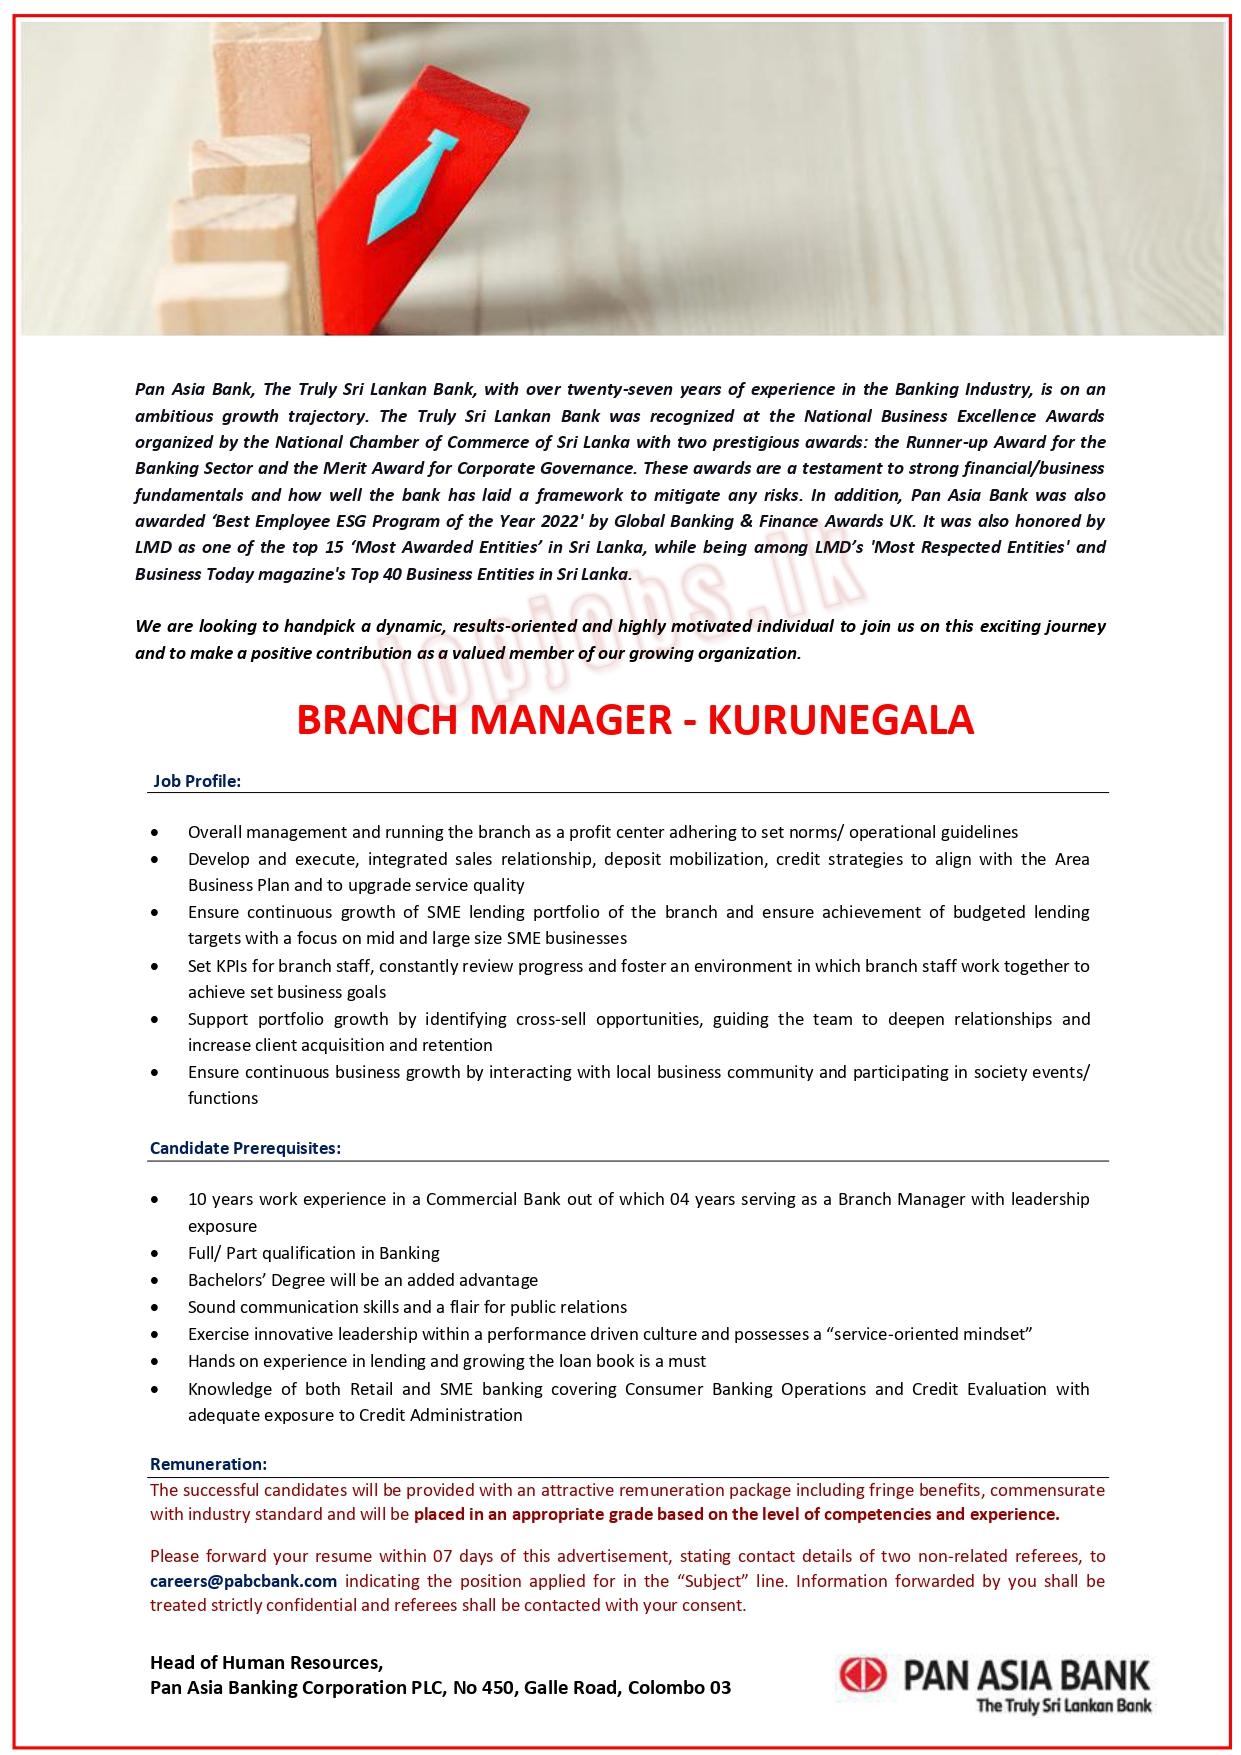 Branch Manager - Kurunegala